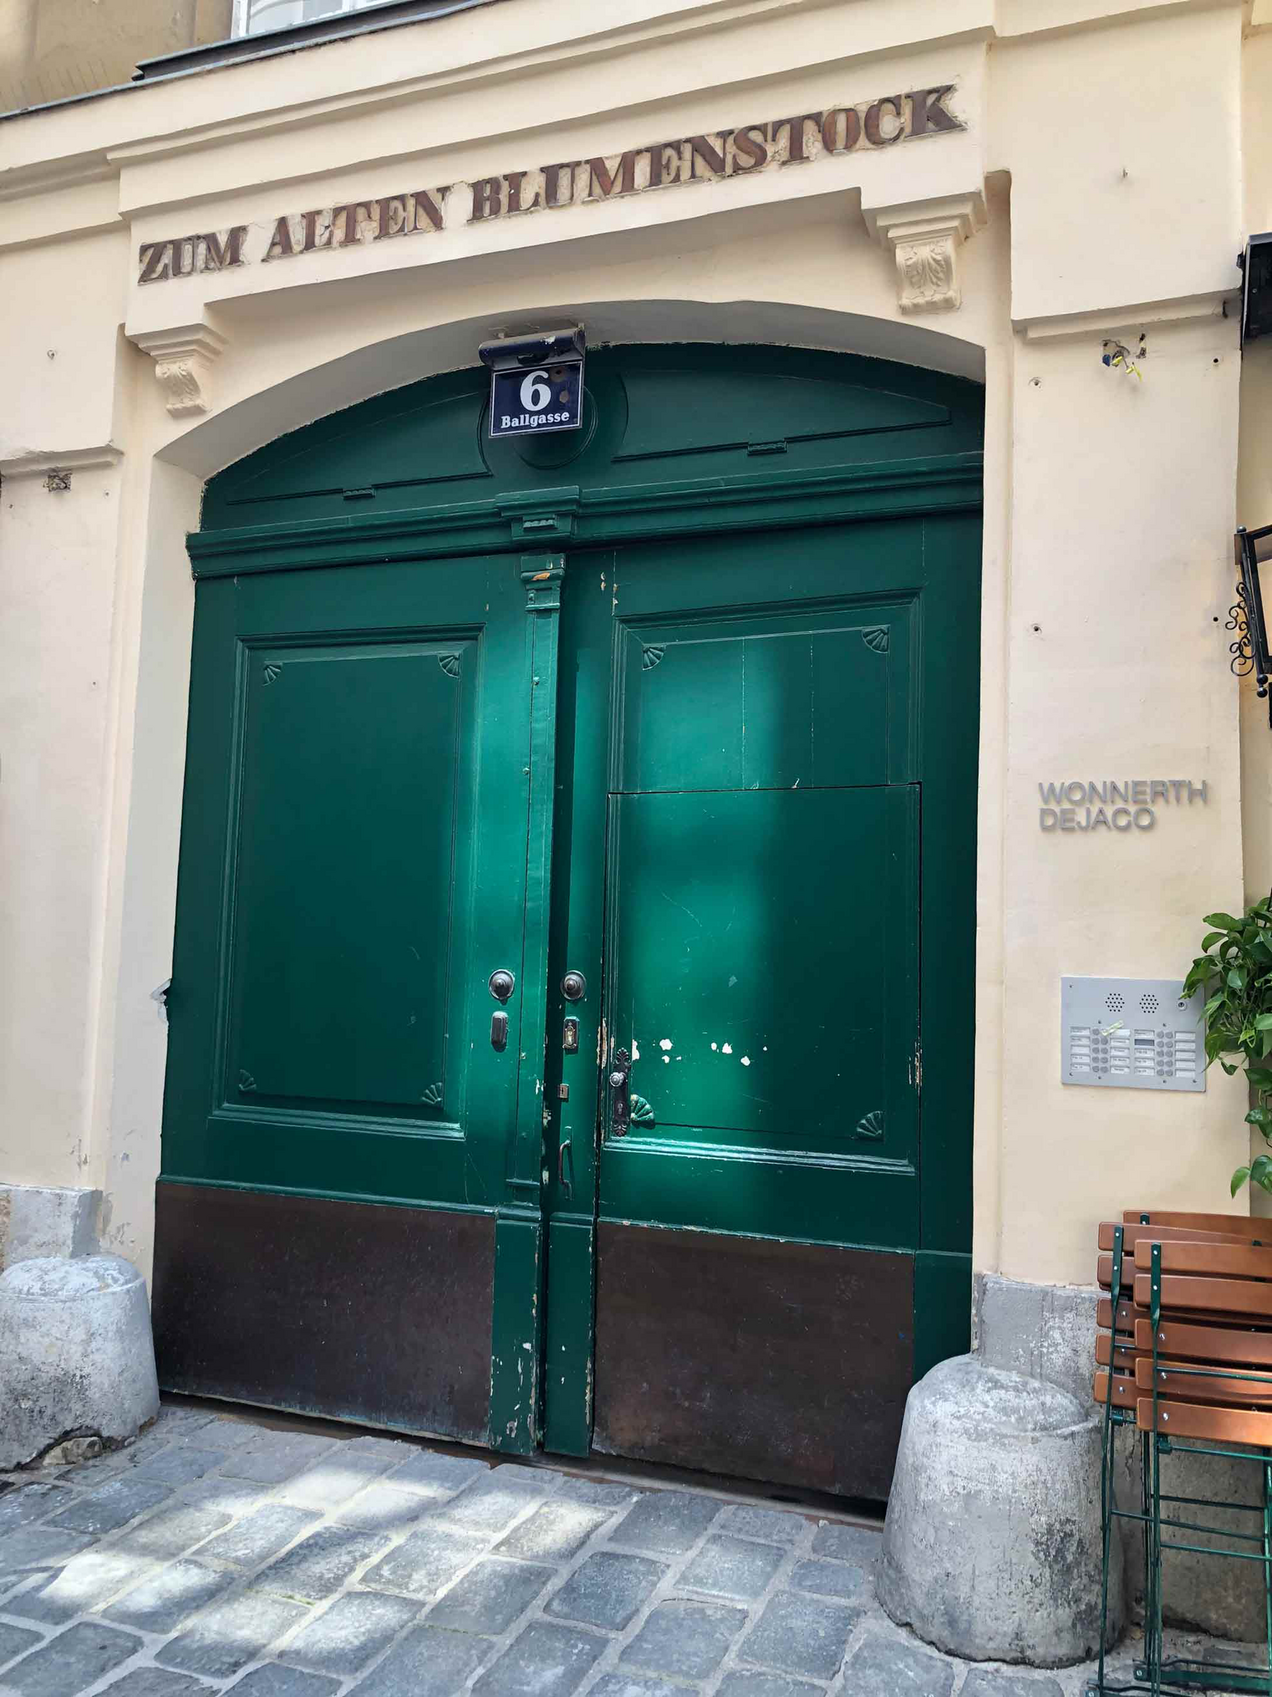 Facade of the Wonnert Dejaco Gallery in Vienna, above the green door is written "Zum alten Blumenstock"